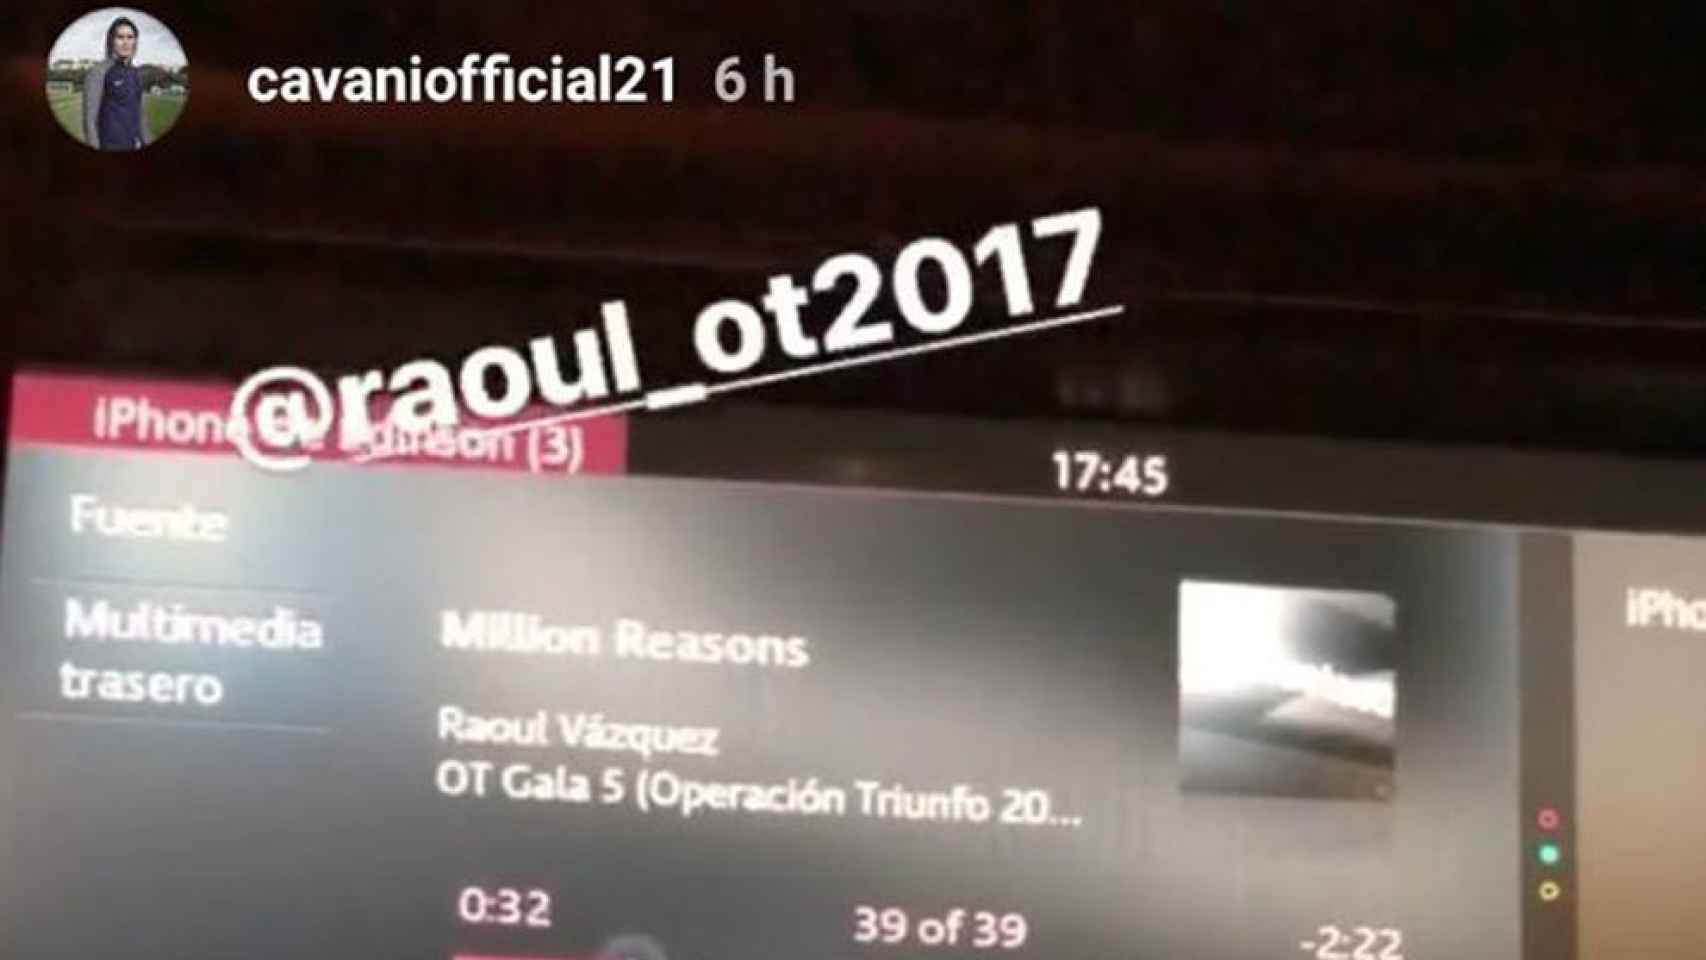 Imagen puesta por Cavani en su Instagram, escuchando una canción de Raoul.